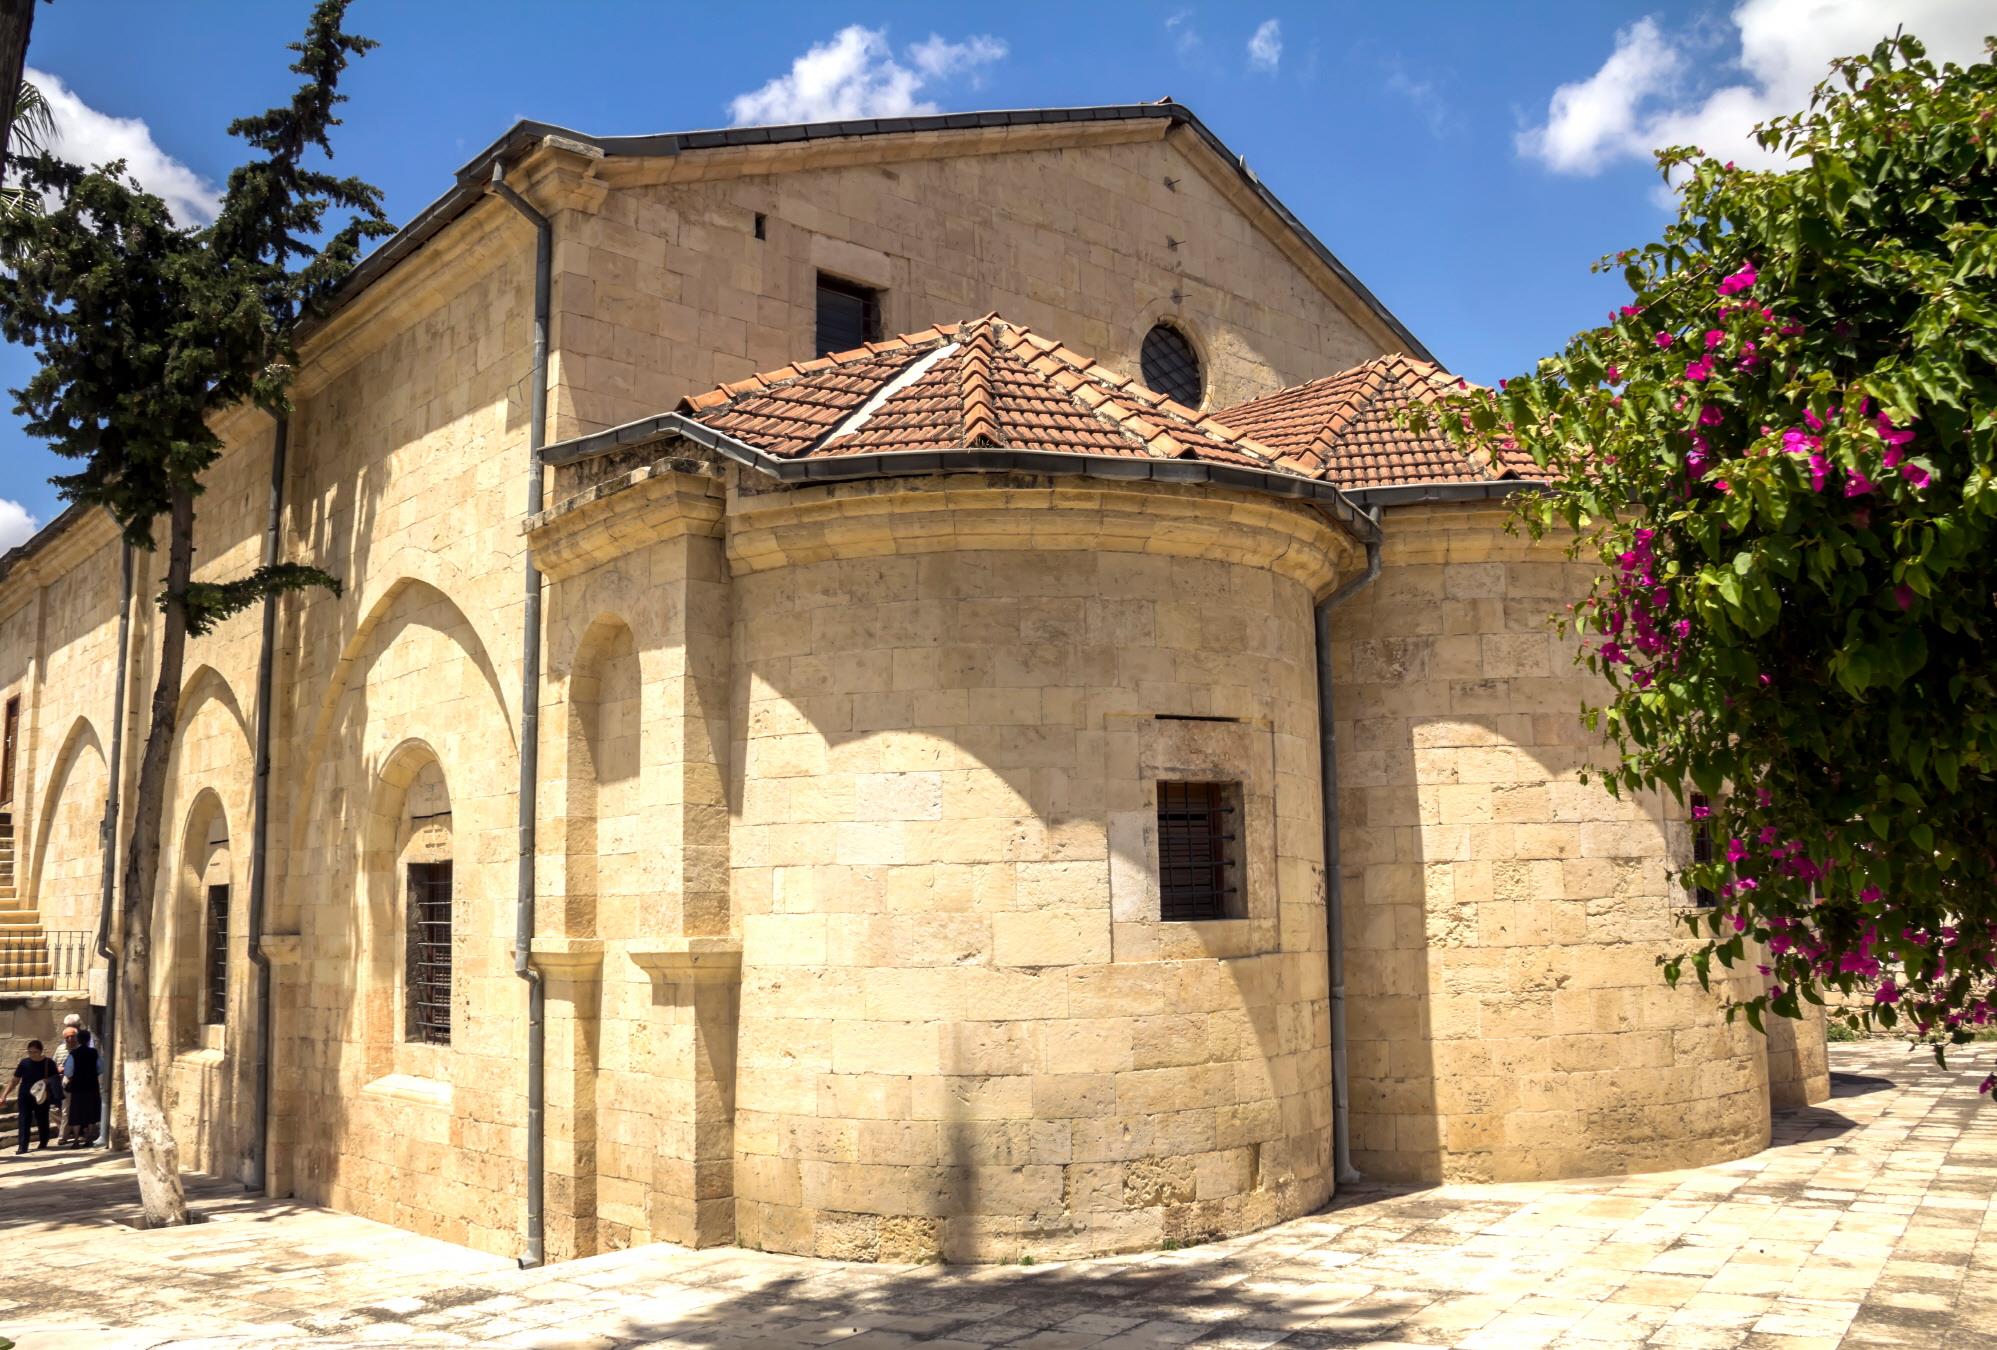 닷소 바울 기념교회  Tarsus Saint Paul church